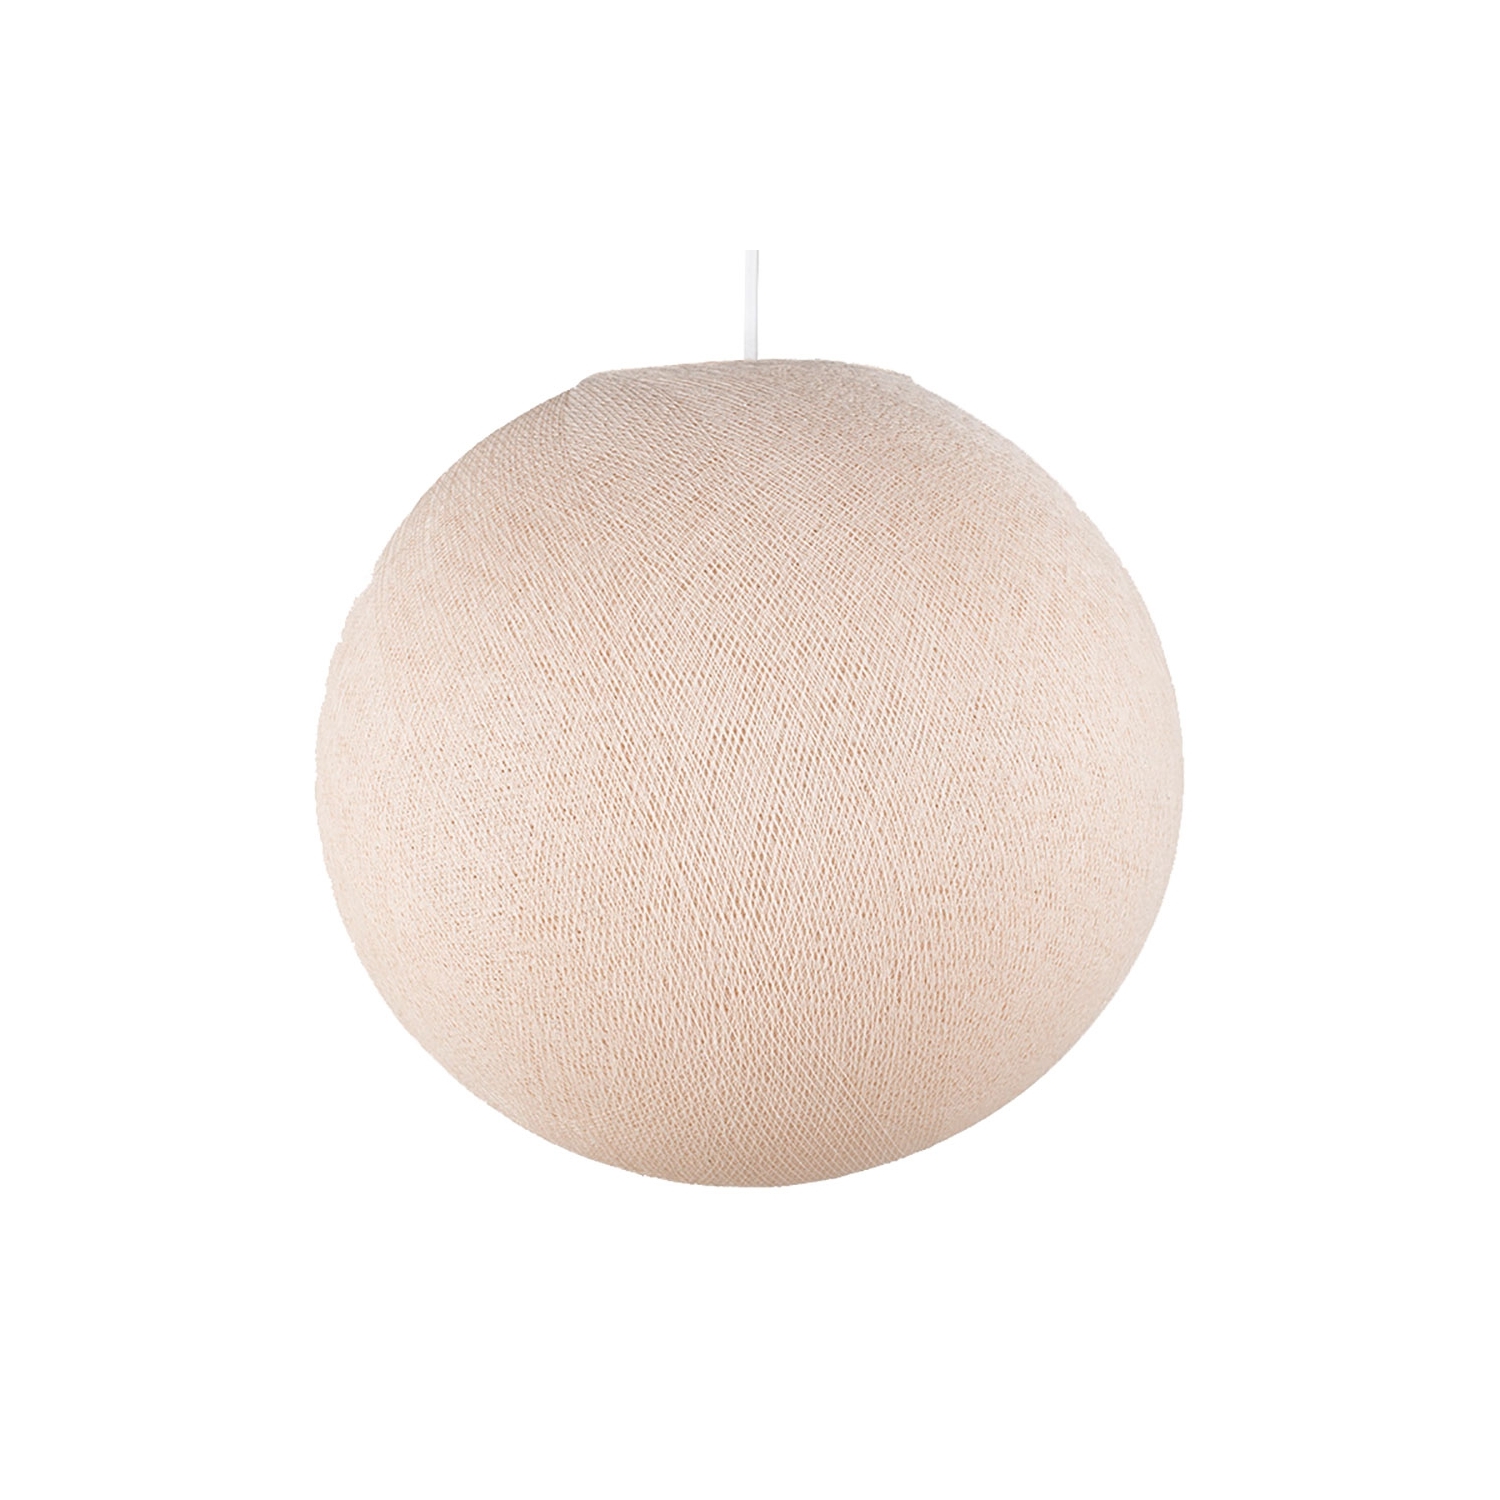 Sphere M lampshade made of polyester fiber, 35 cm diameter - 100% handmade